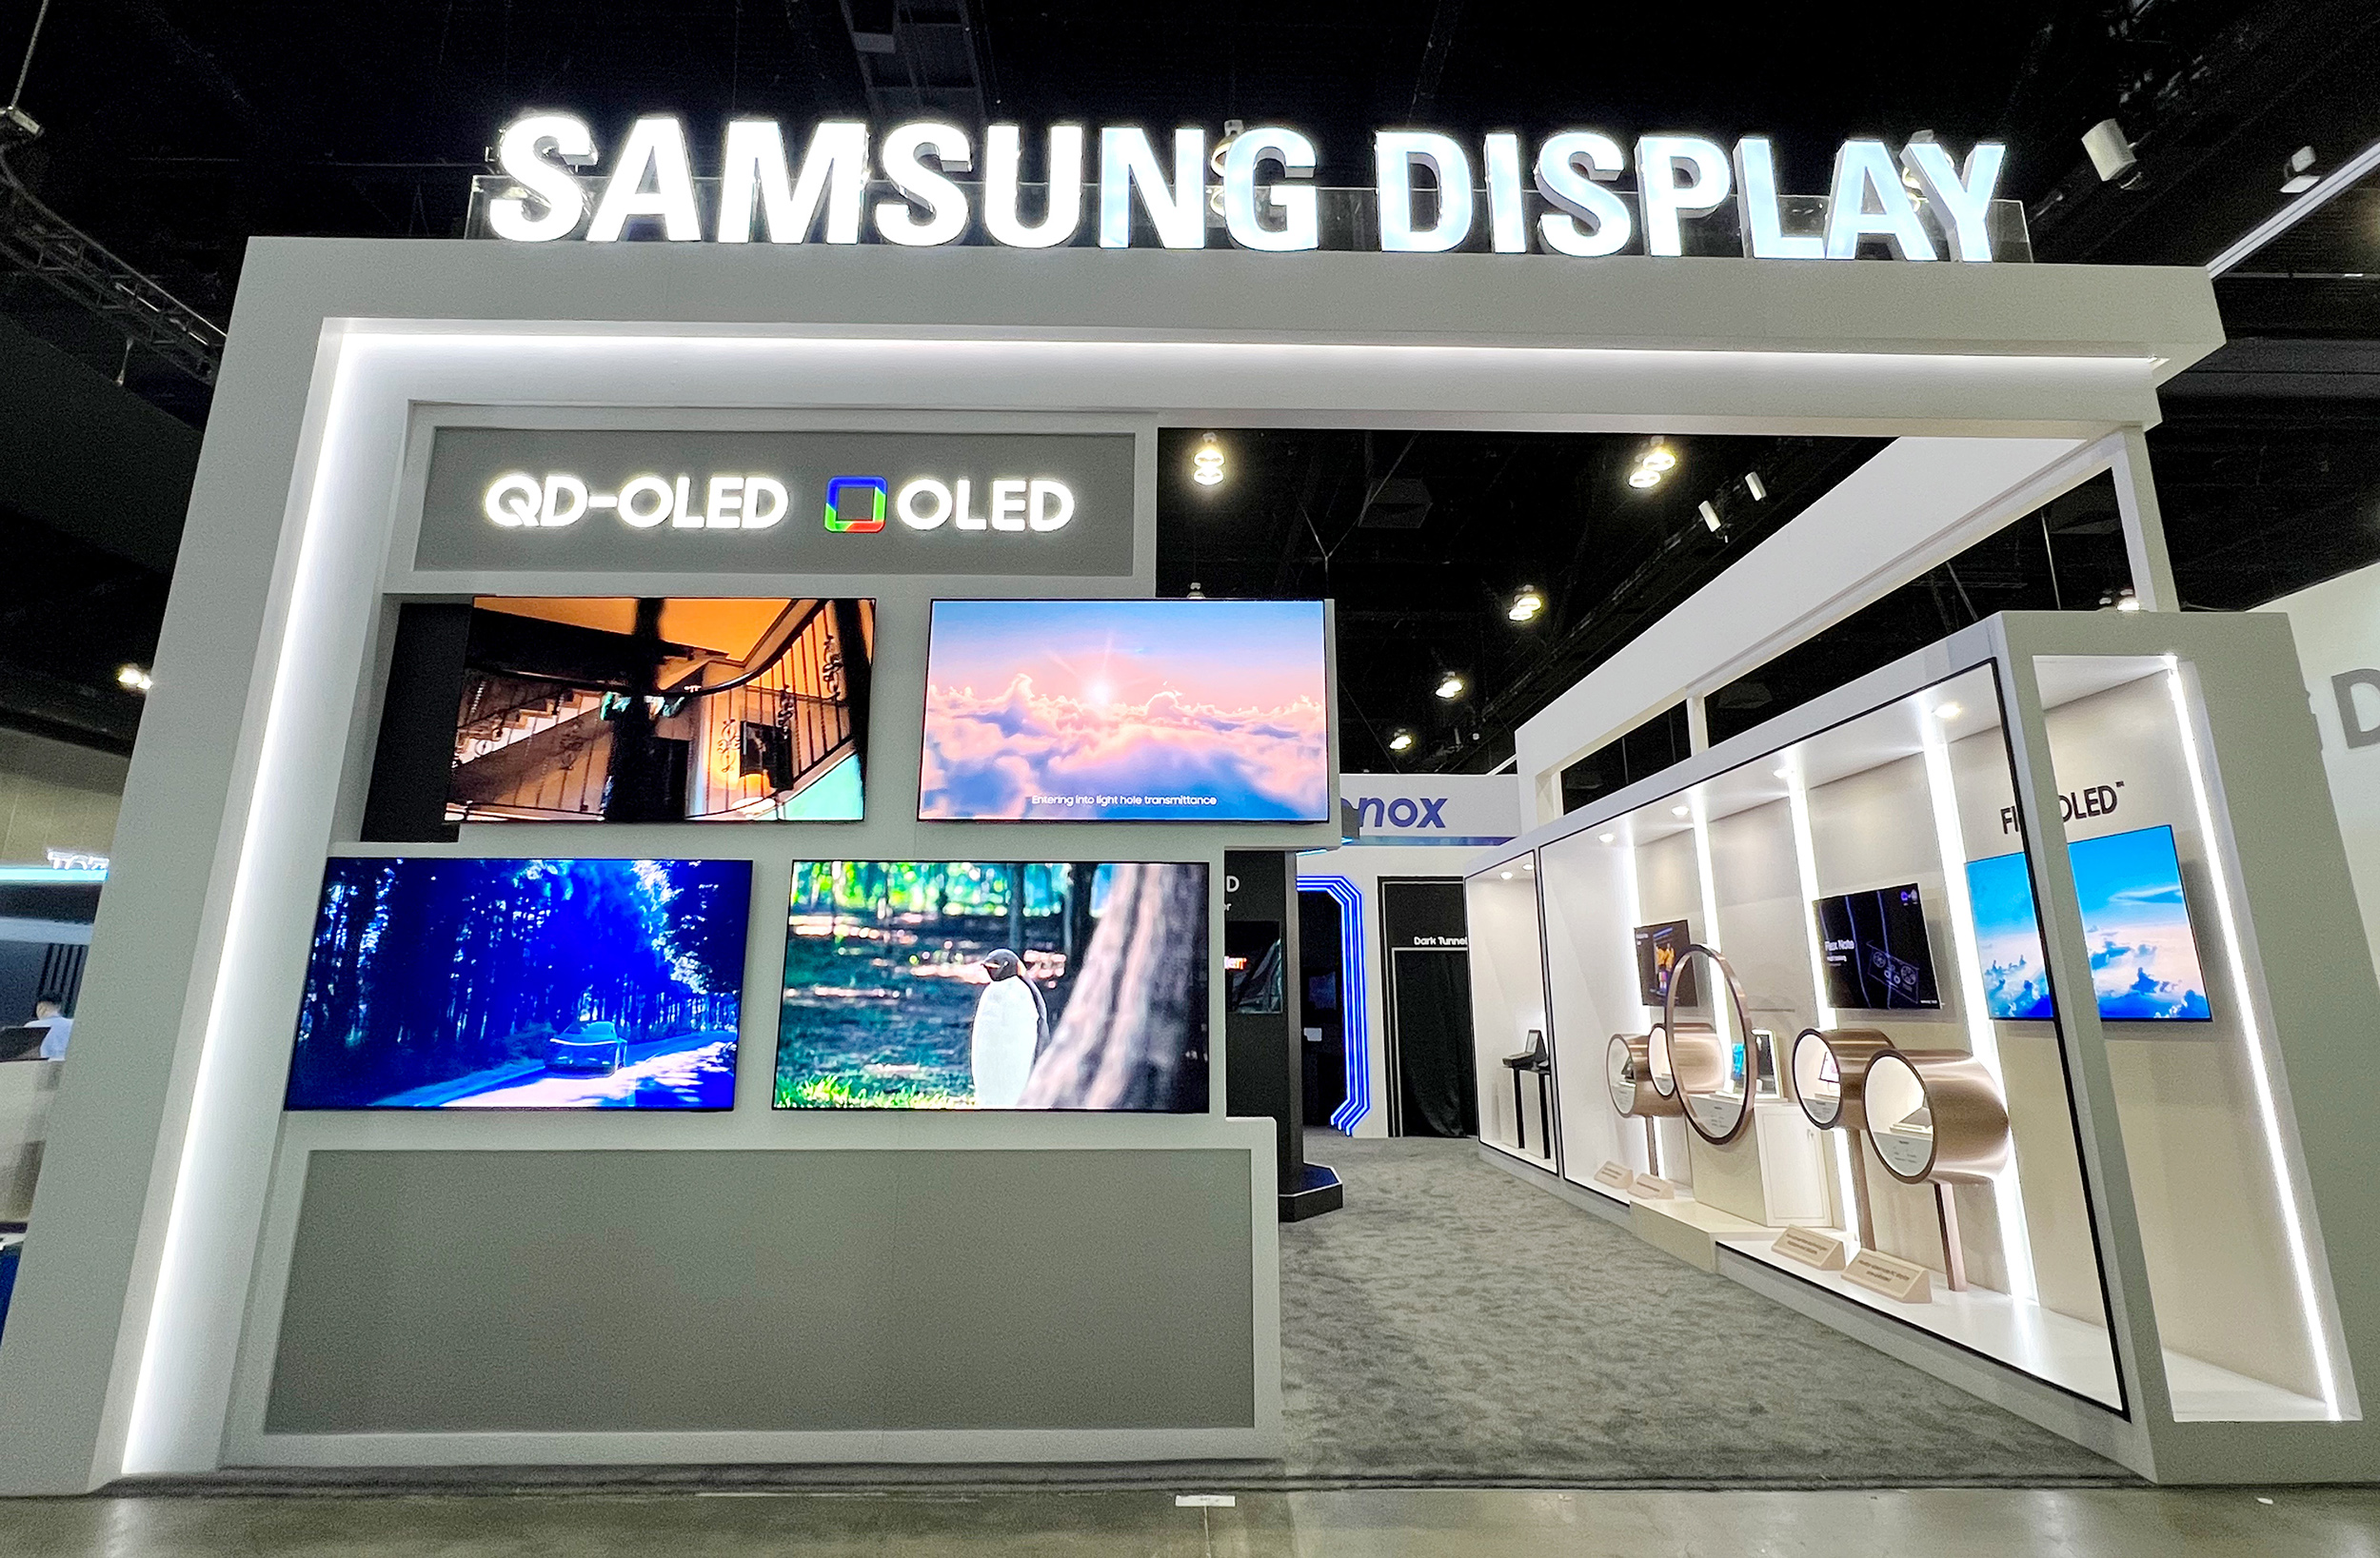 Le nouvel écran OLED de Samsung peut mesurer le rythme cardiaque, la tension artérielle et lire les empreintes digitales n'importe où